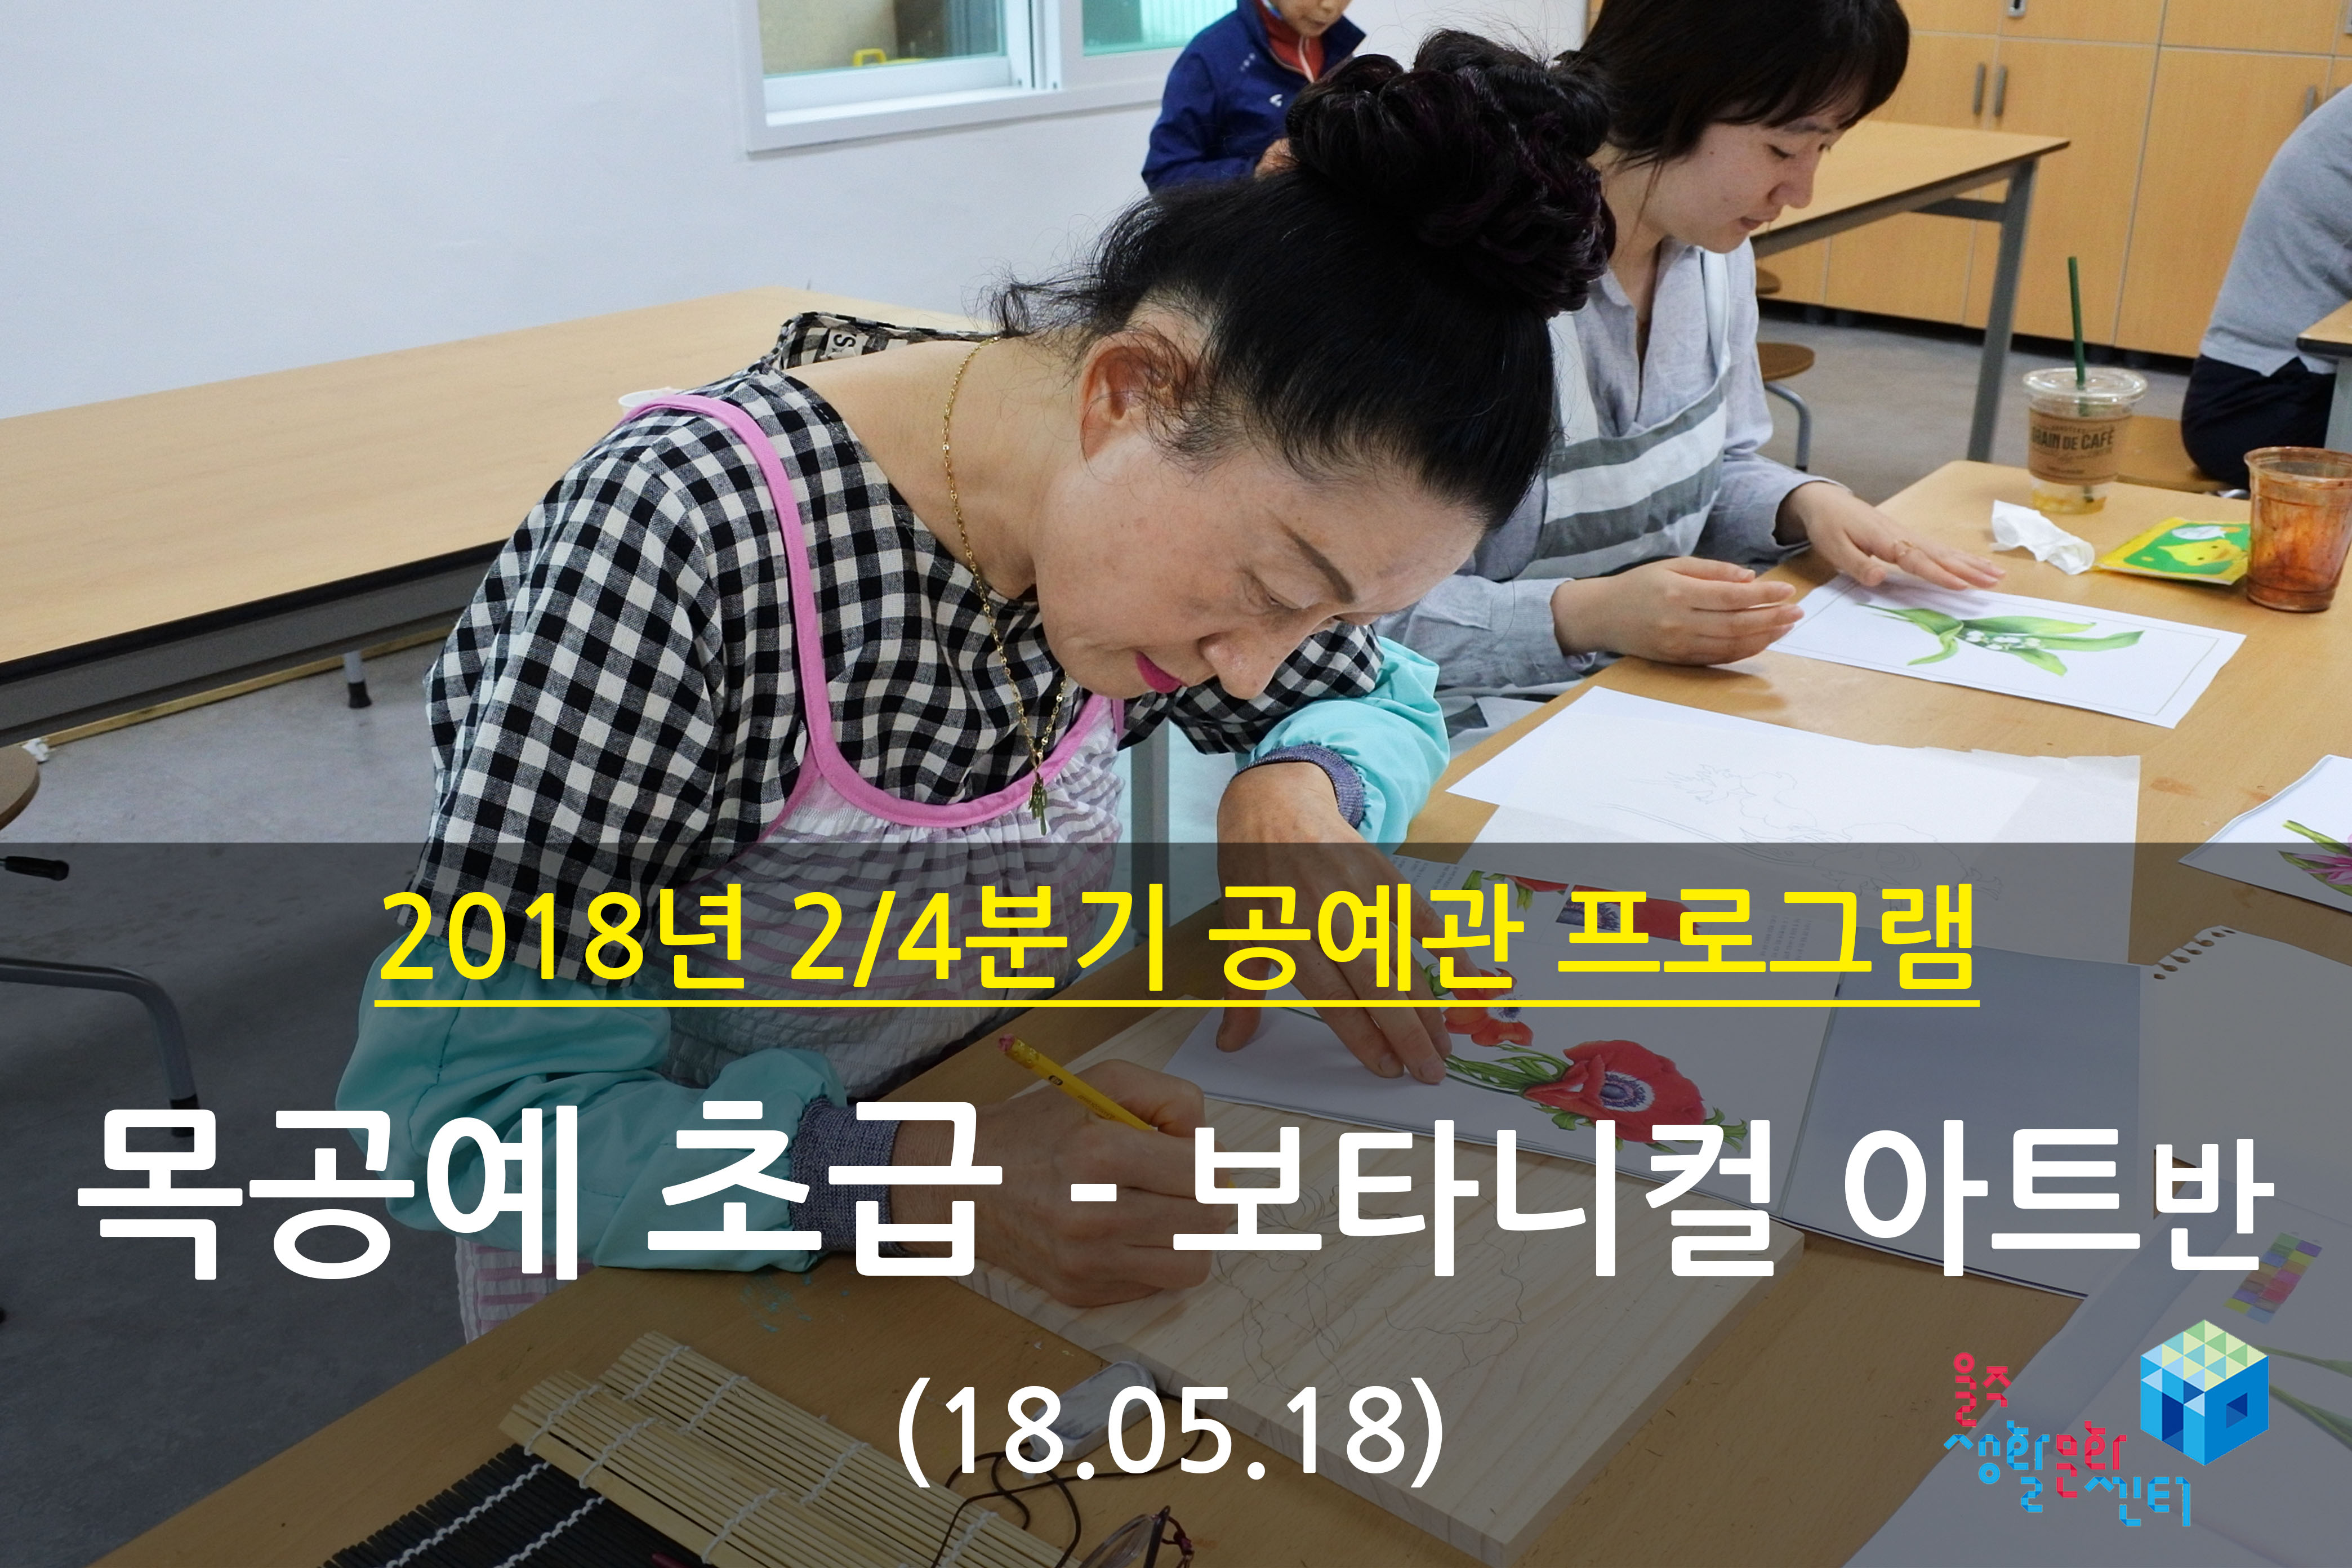 2018.05.18 _ 목공예 초급 - 보타니컬 아트반 _ 2/4분기 7주차 수업